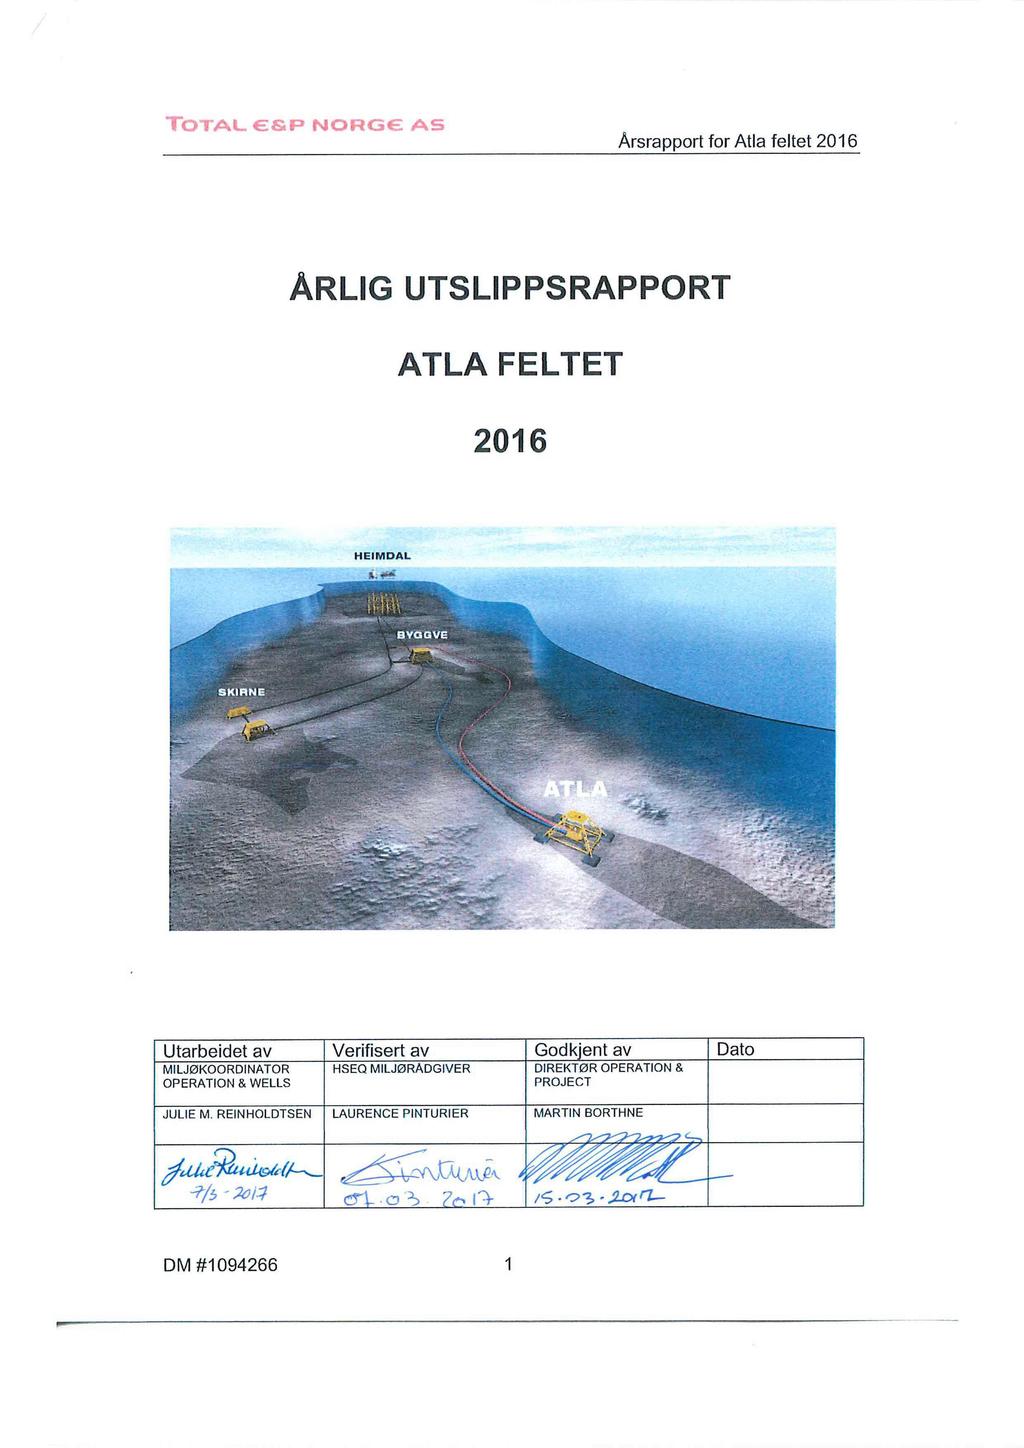 Arsraort for Atla feltet 2016 ARLIG UTSLIPPSRAPPORT ATLA FELTET 2016 Ill IF1flAt - :.j. - -:r N - -z - :.